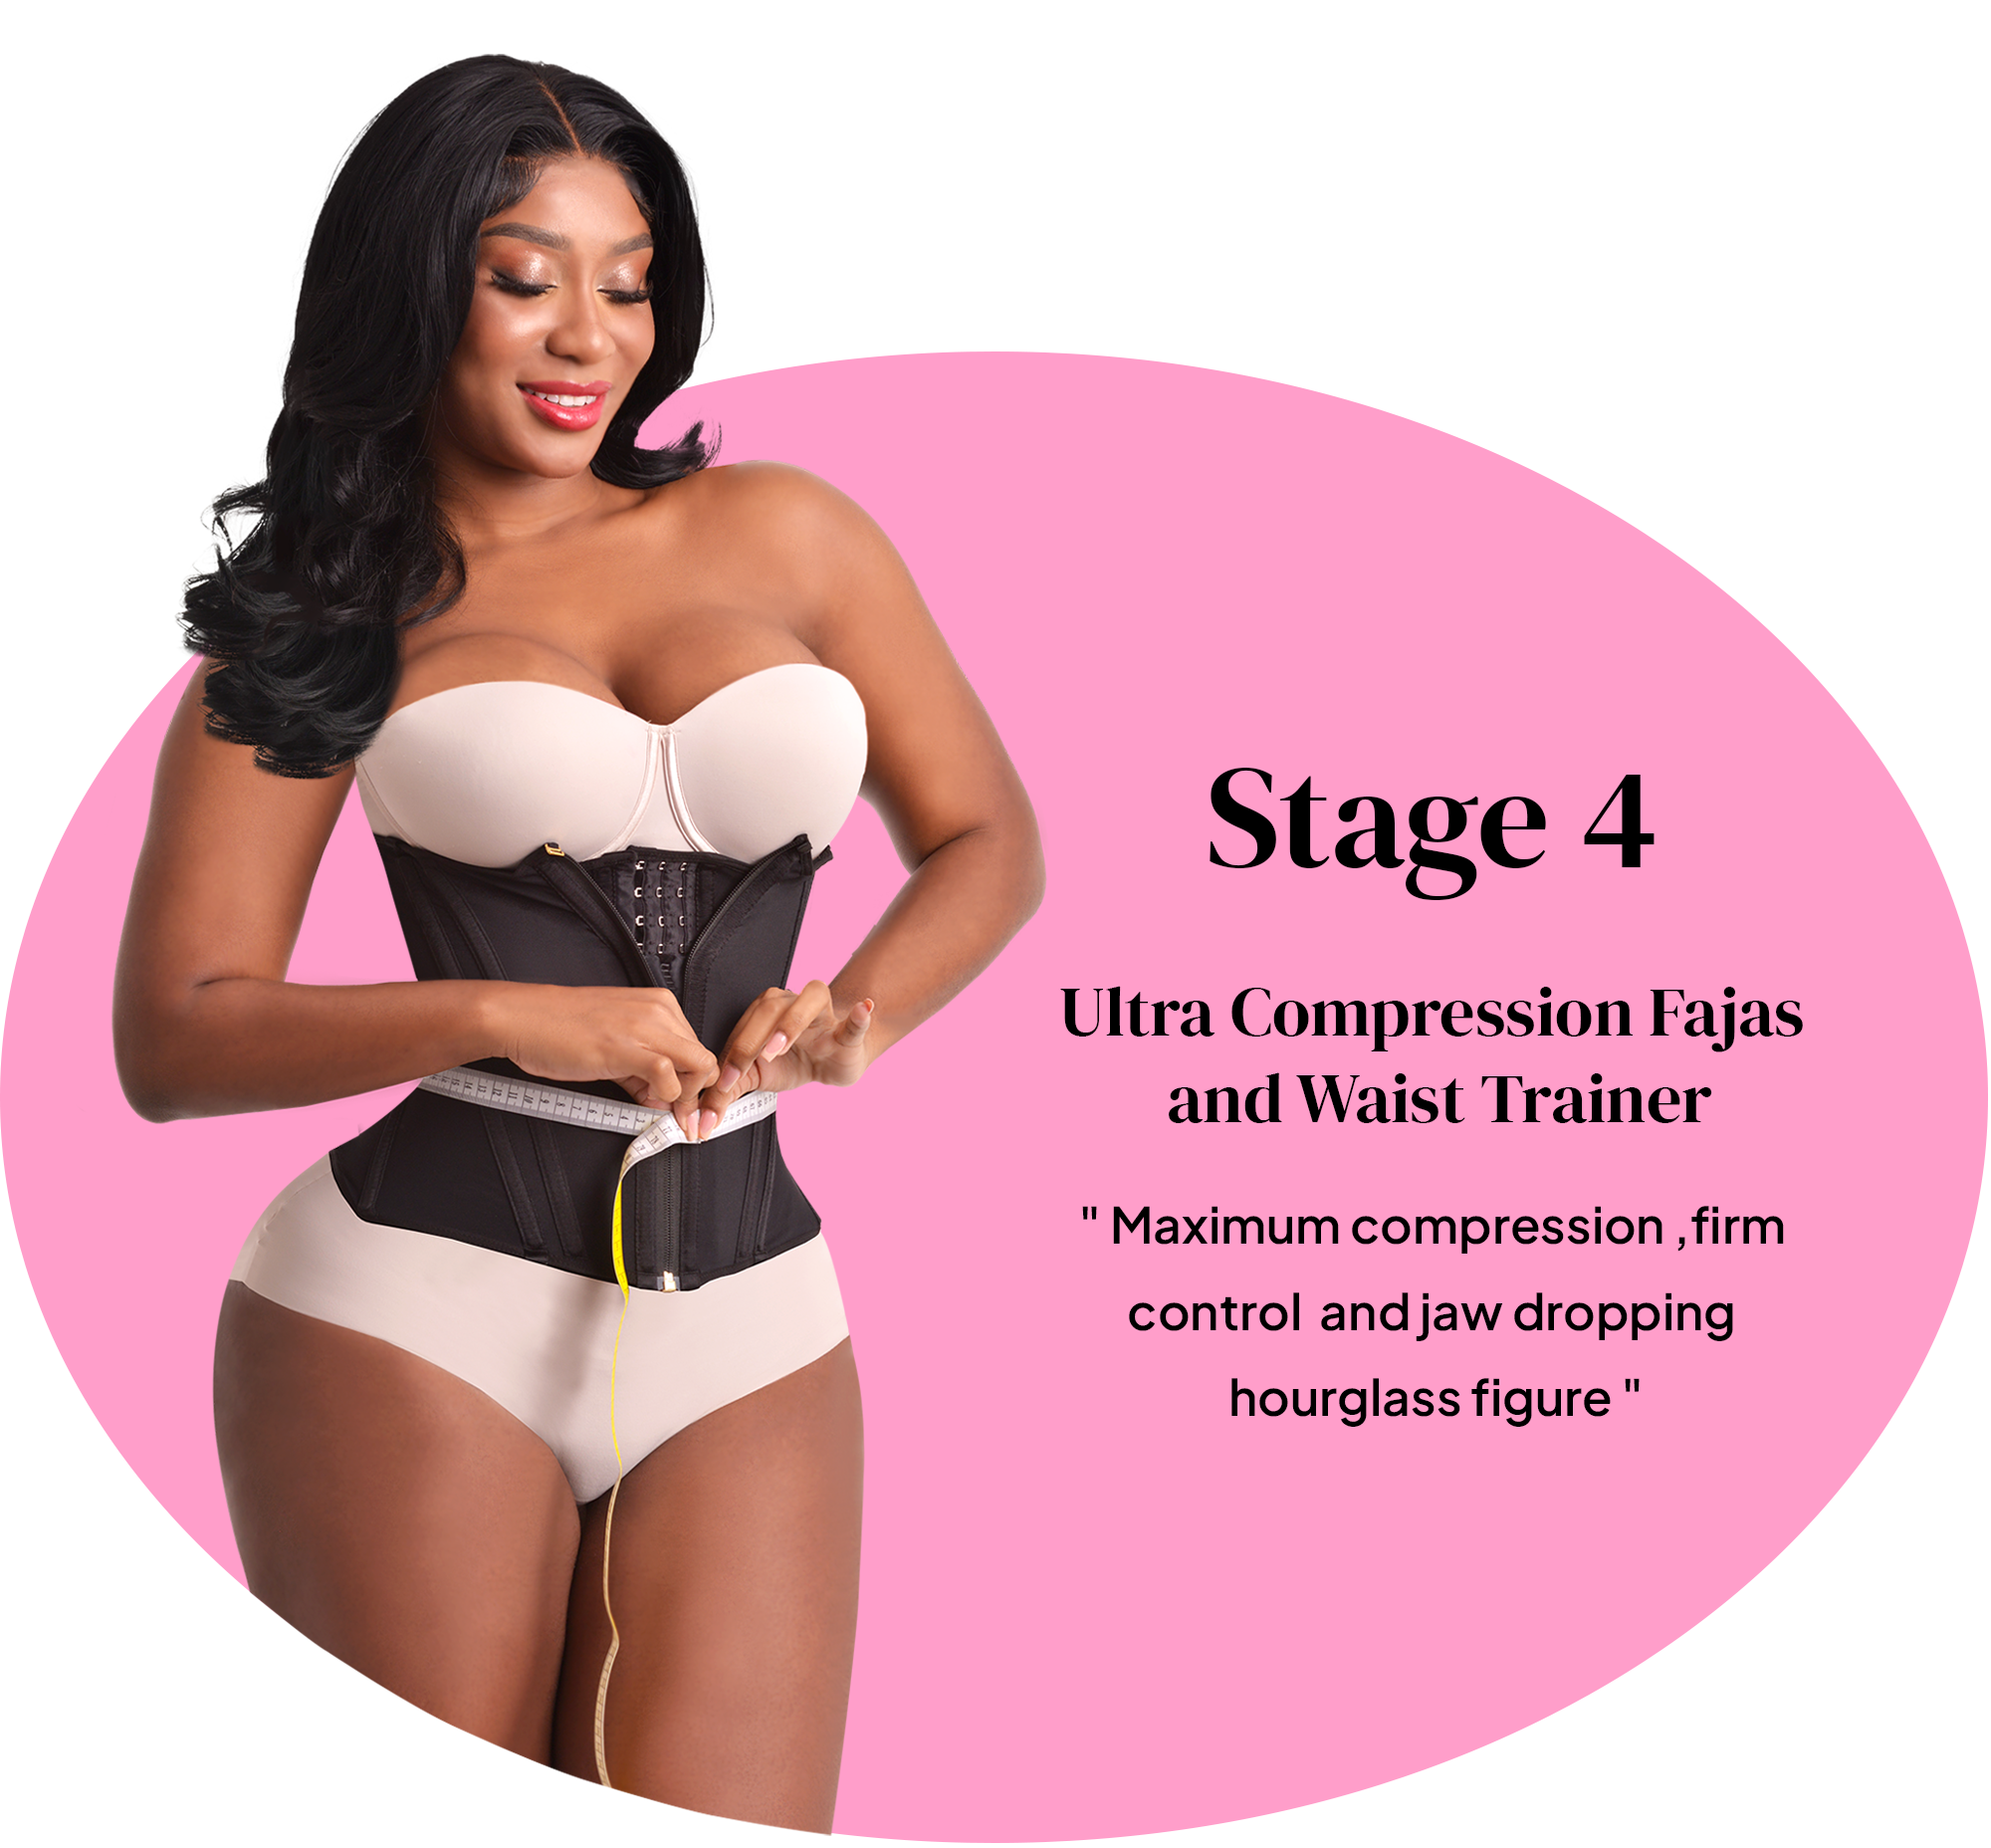 Fashion Faja Colombian Women's Corset Waist Trainer Body Shapewear Modeling  Strap Slimming Underwear Tummy Control Belt Fajas Reductoras @ Best Price  Online